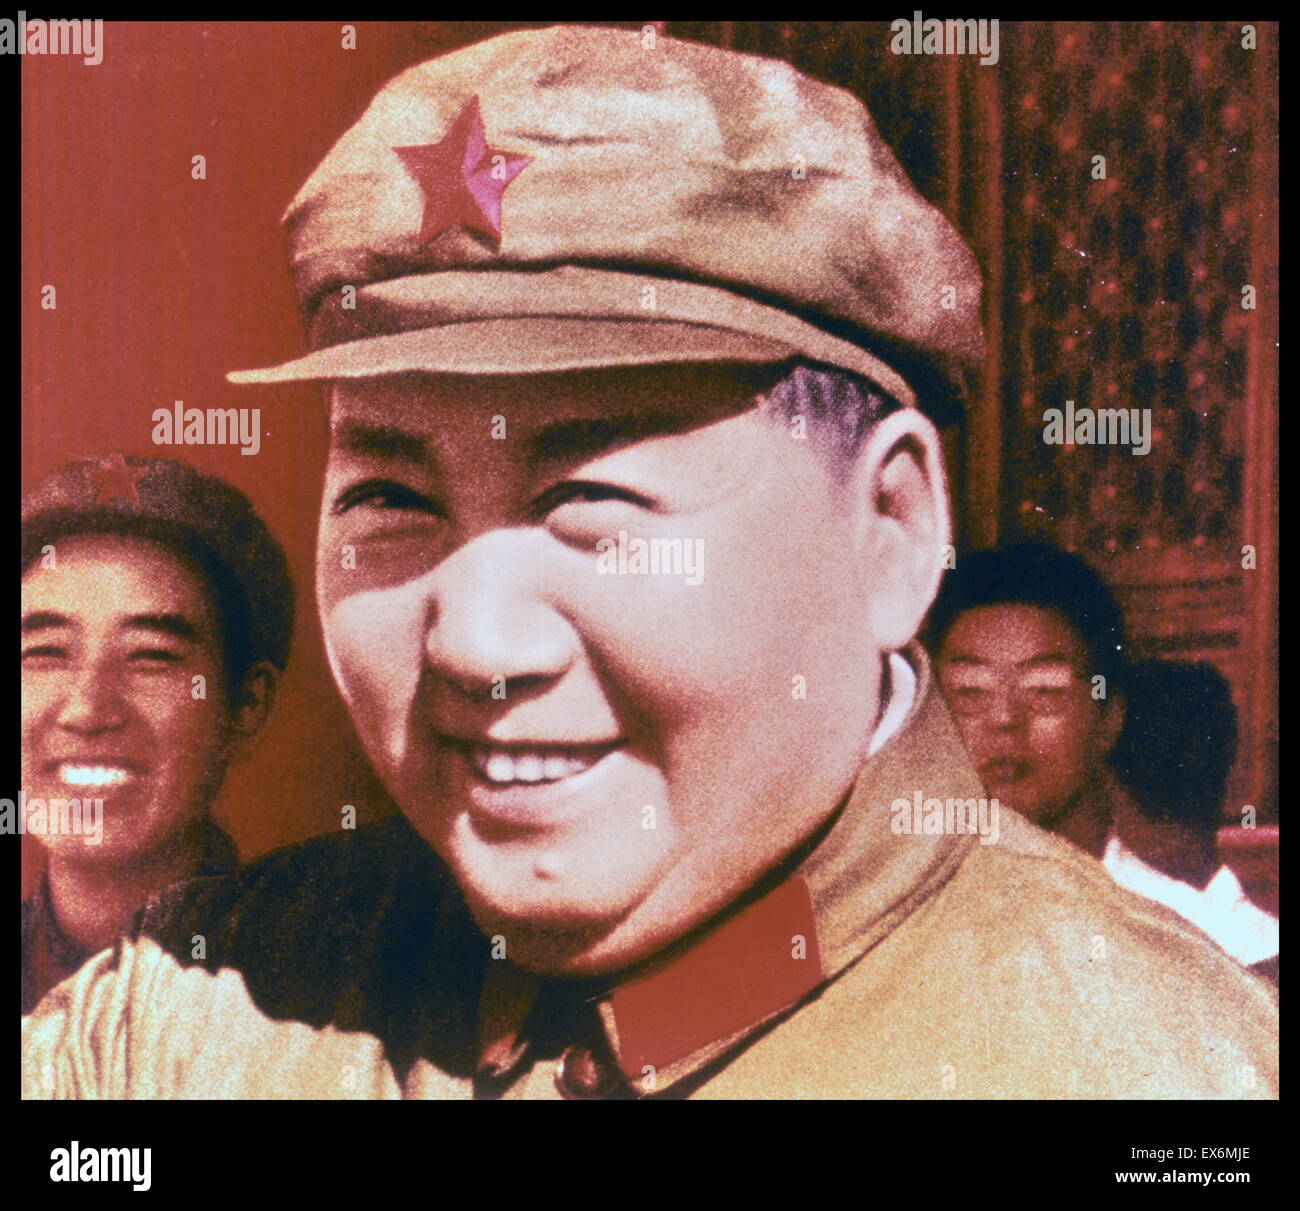 Mao Zedong (Mao Tse-tung, 26 décembre 1893 - 9 septembre 1976), révolutionnaire communiste chinois et le père fondateur de la République populaire de Chine, Banque D'Images